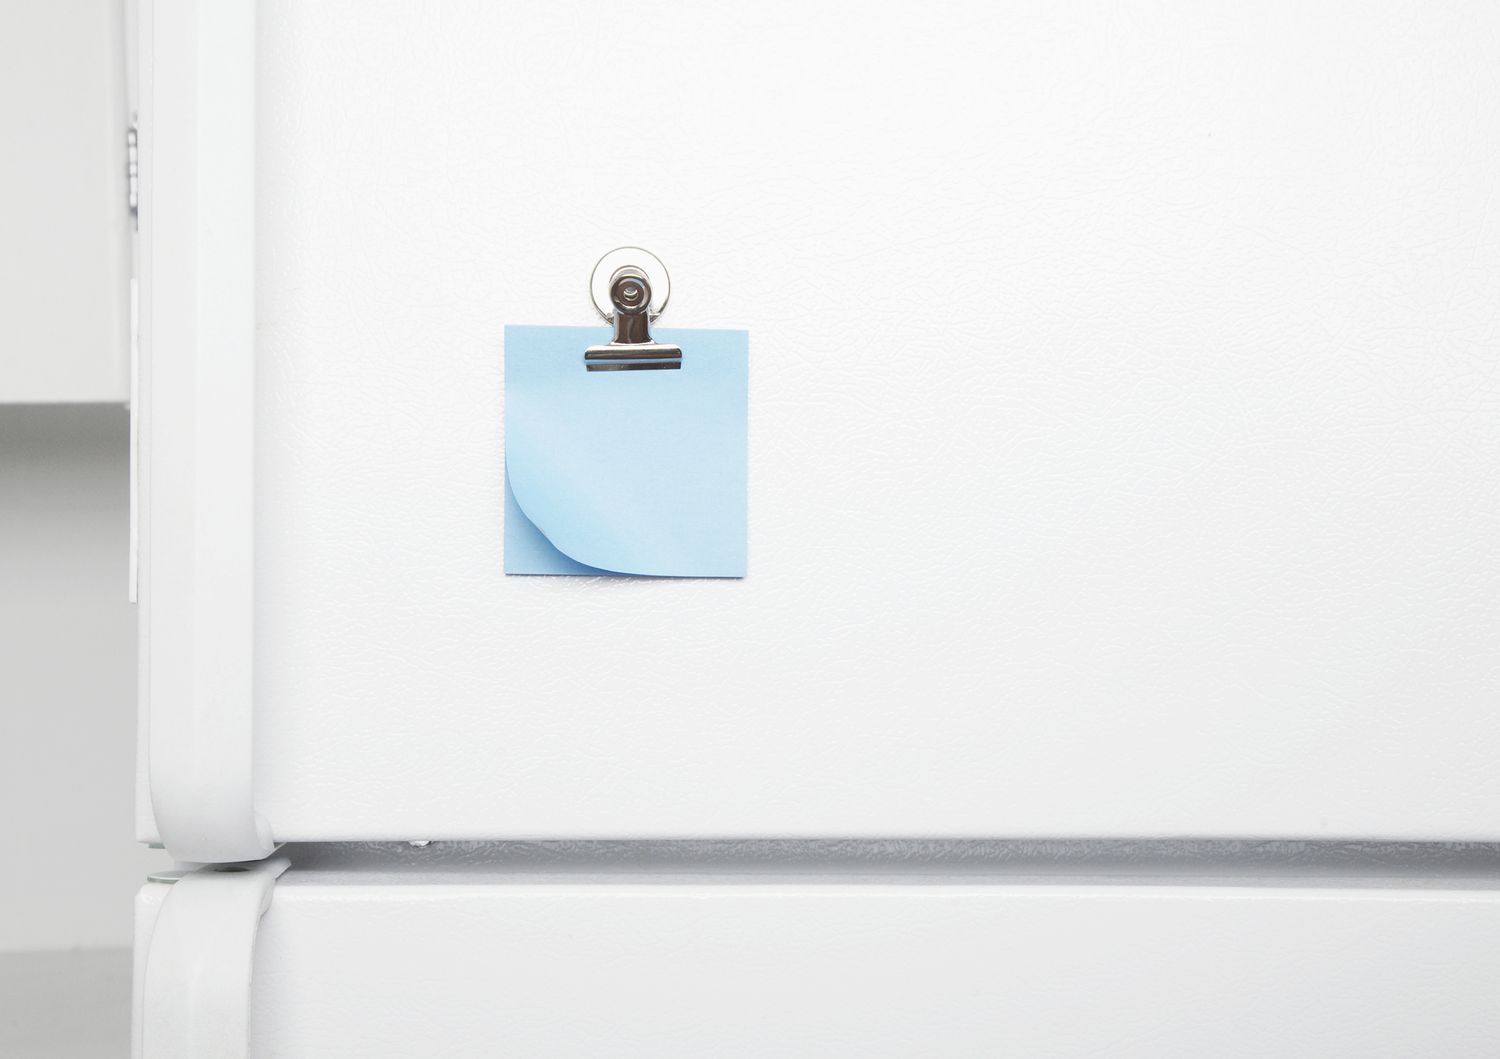 Exterior da porta da geladeira com nota adesiva azul.